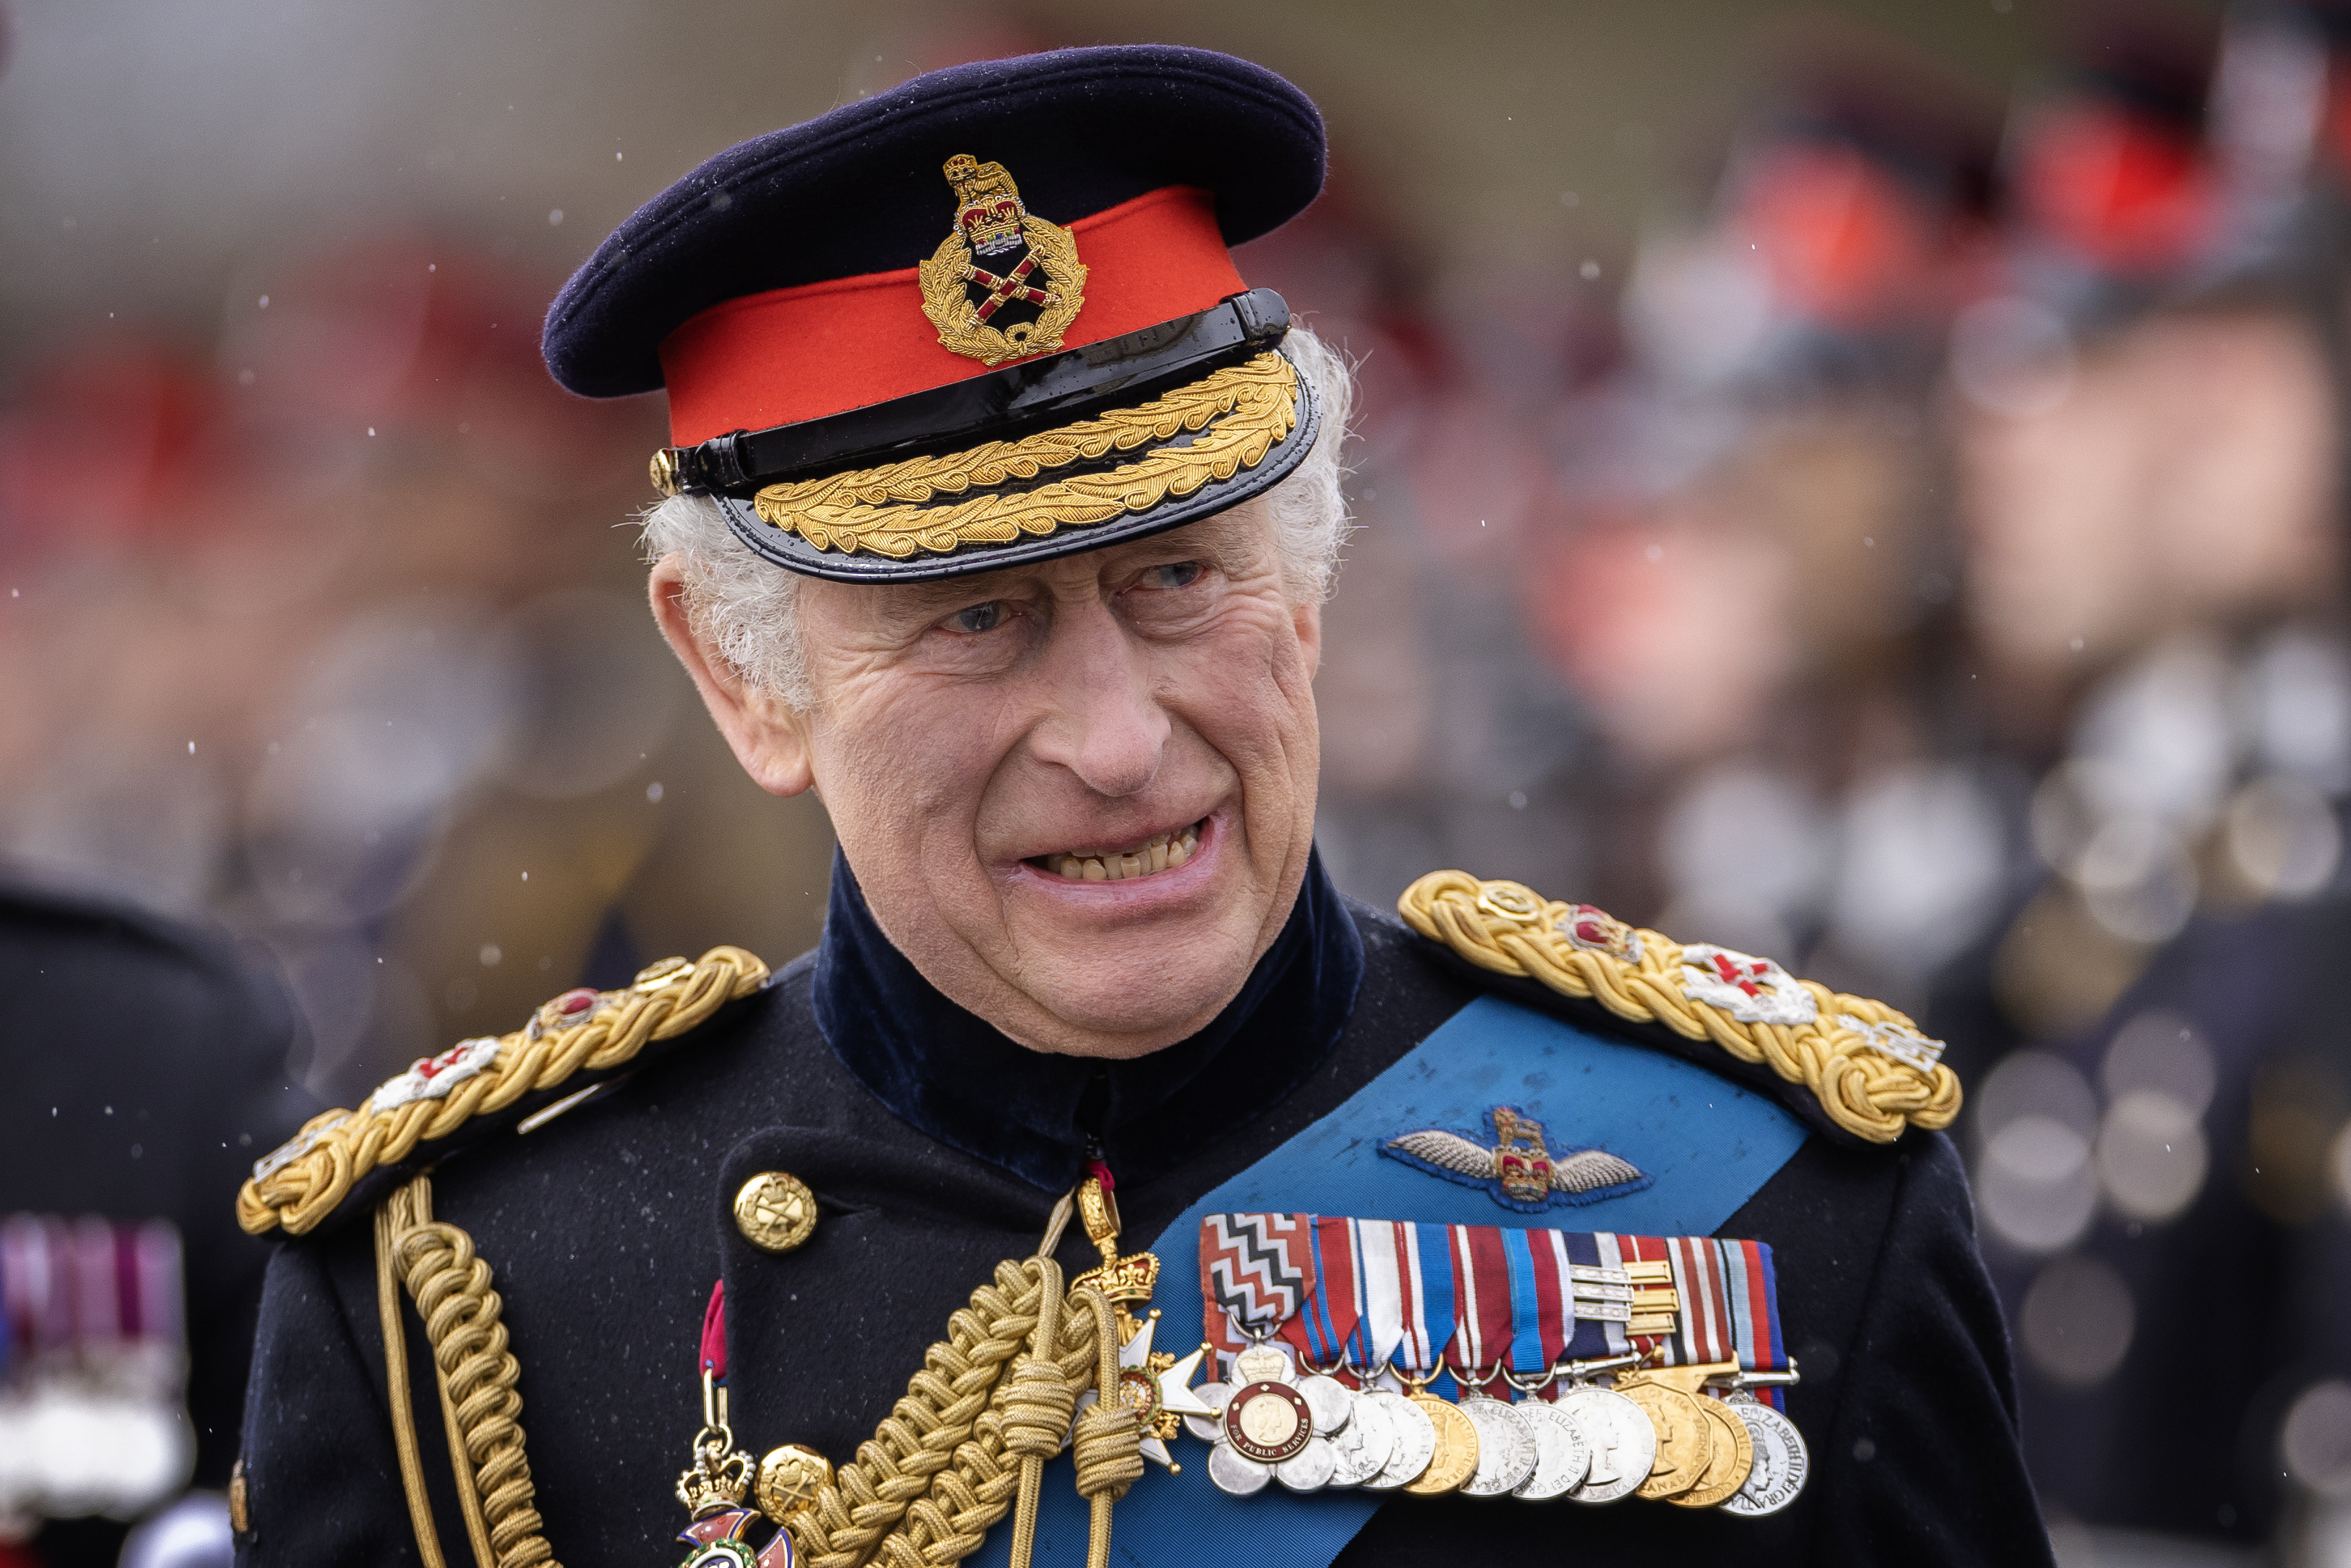 Le roi Charles III à l'Académie militaire royale de Sandhurst le 14 avril 2023 | Source : Getty Images